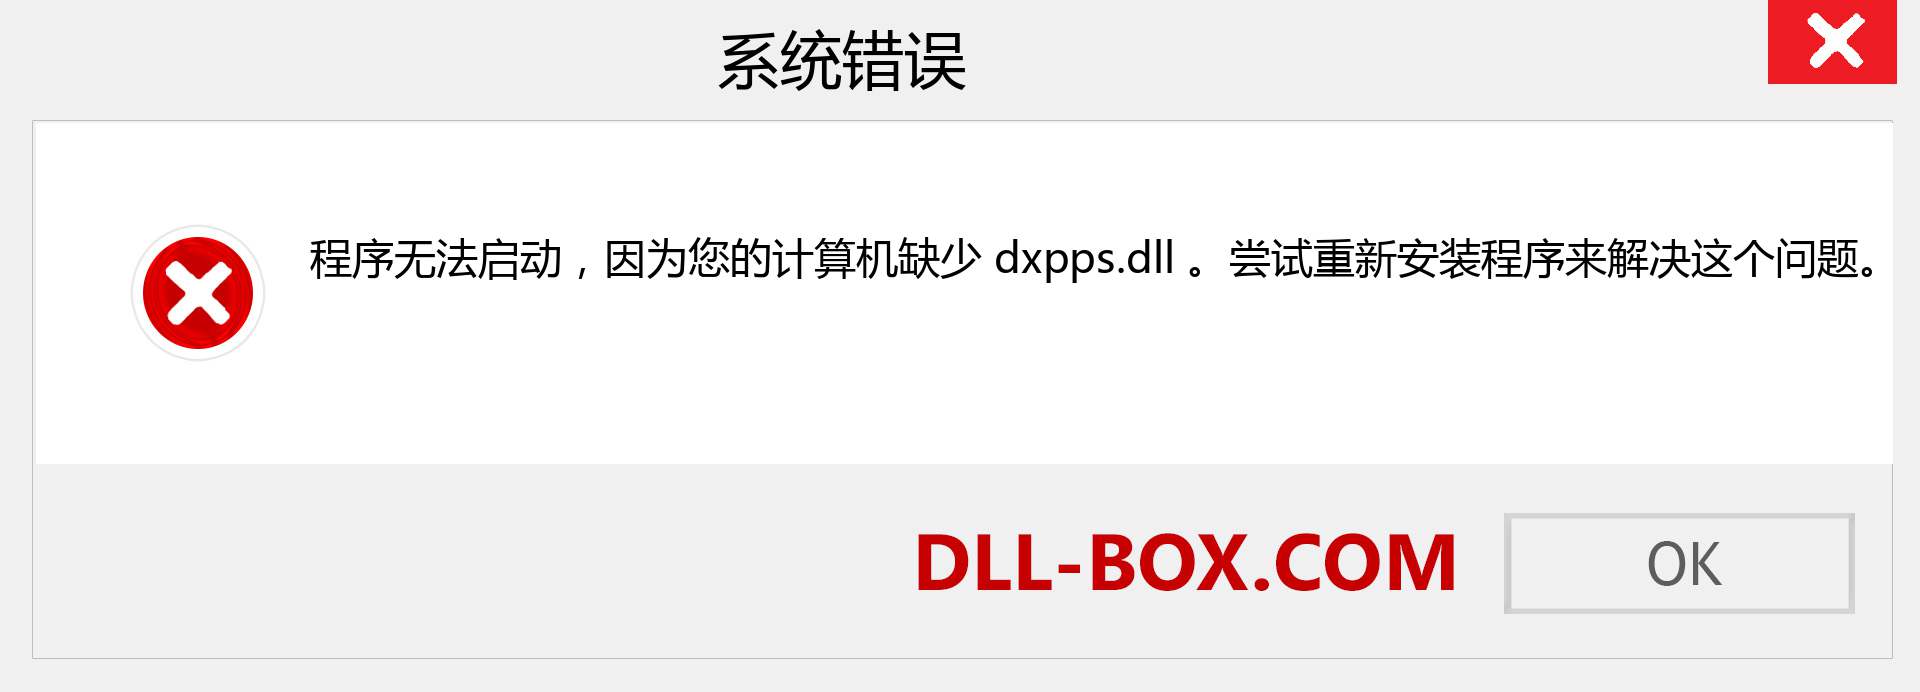 dxpps.dll 文件丢失？。 适用于 Windows 7、8、10 的下载 - 修复 Windows、照片、图像上的 dxpps dll 丢失错误